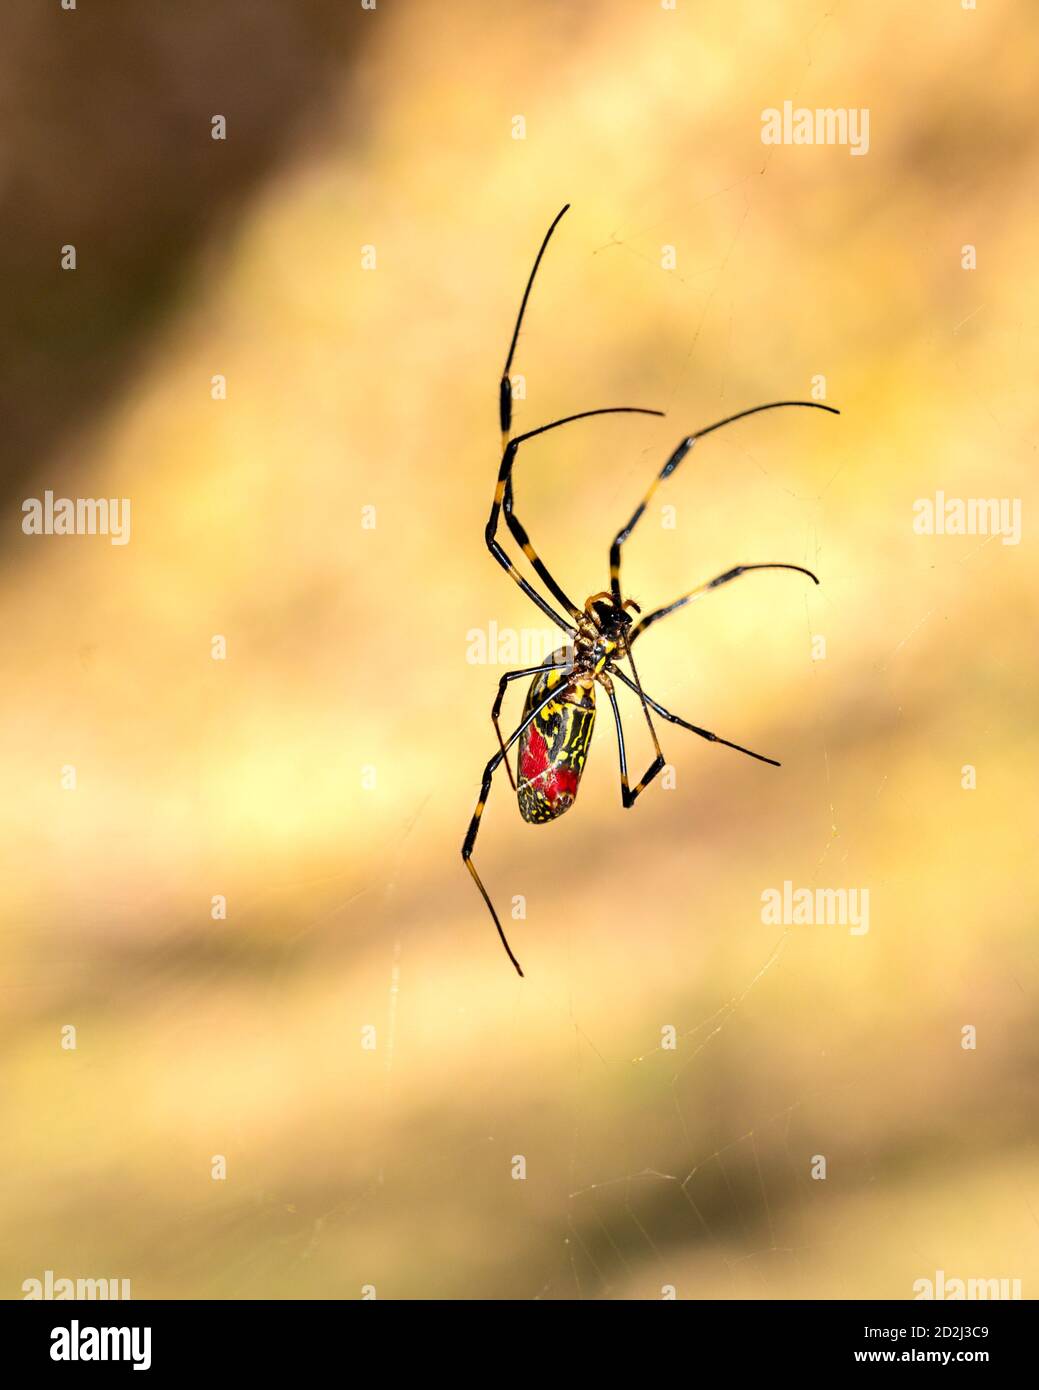 Gros plan d'une araignée japonaise Joro se déplaçant à travers son web. Photo de DOF peu profonde prise en Asie. Banque D'Images